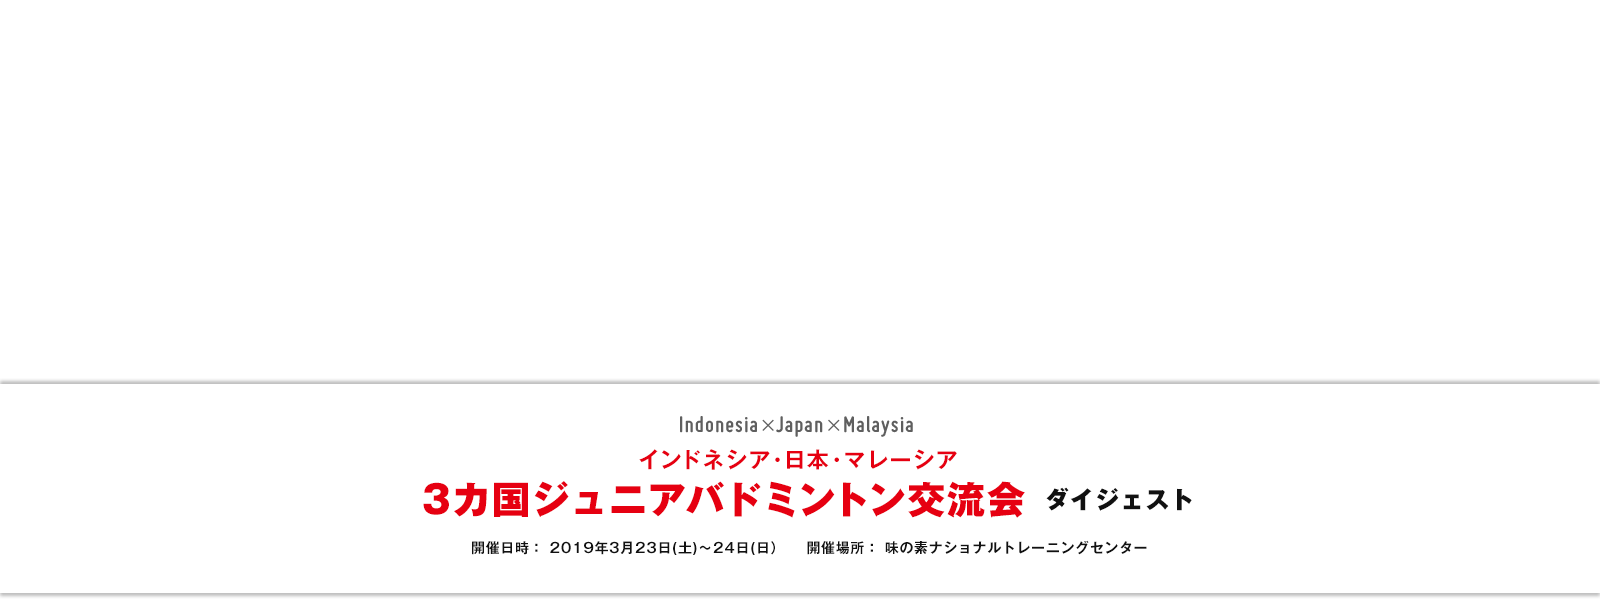 インドネシア・日本・マレーシア 3カ国ジュニアバドミントン交流会ダイジェスト 開催日時： 2019年3月23日(土)～24日(日) 開催場所：味の素ナショナルトレーニングセンター